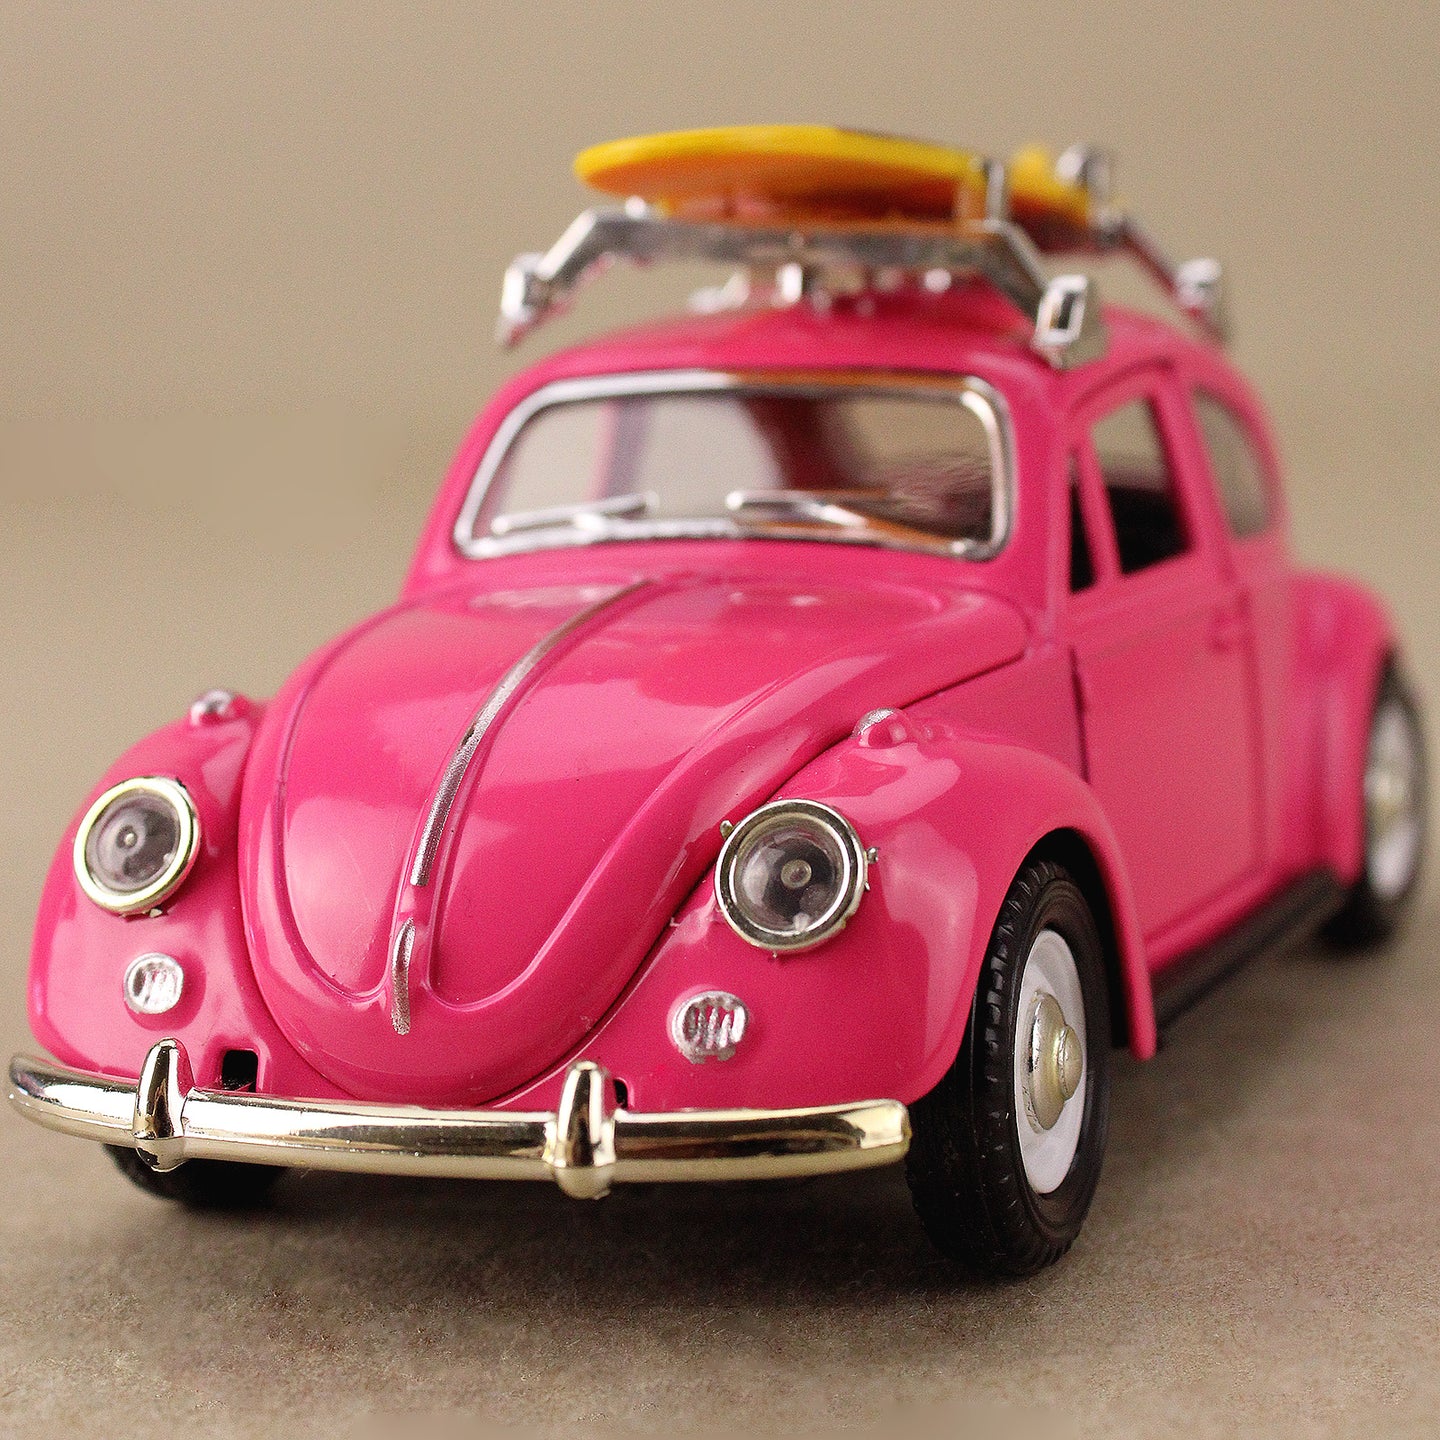 1967 Volkswagen Classic Beetle - Pink w Yellow Surfboard